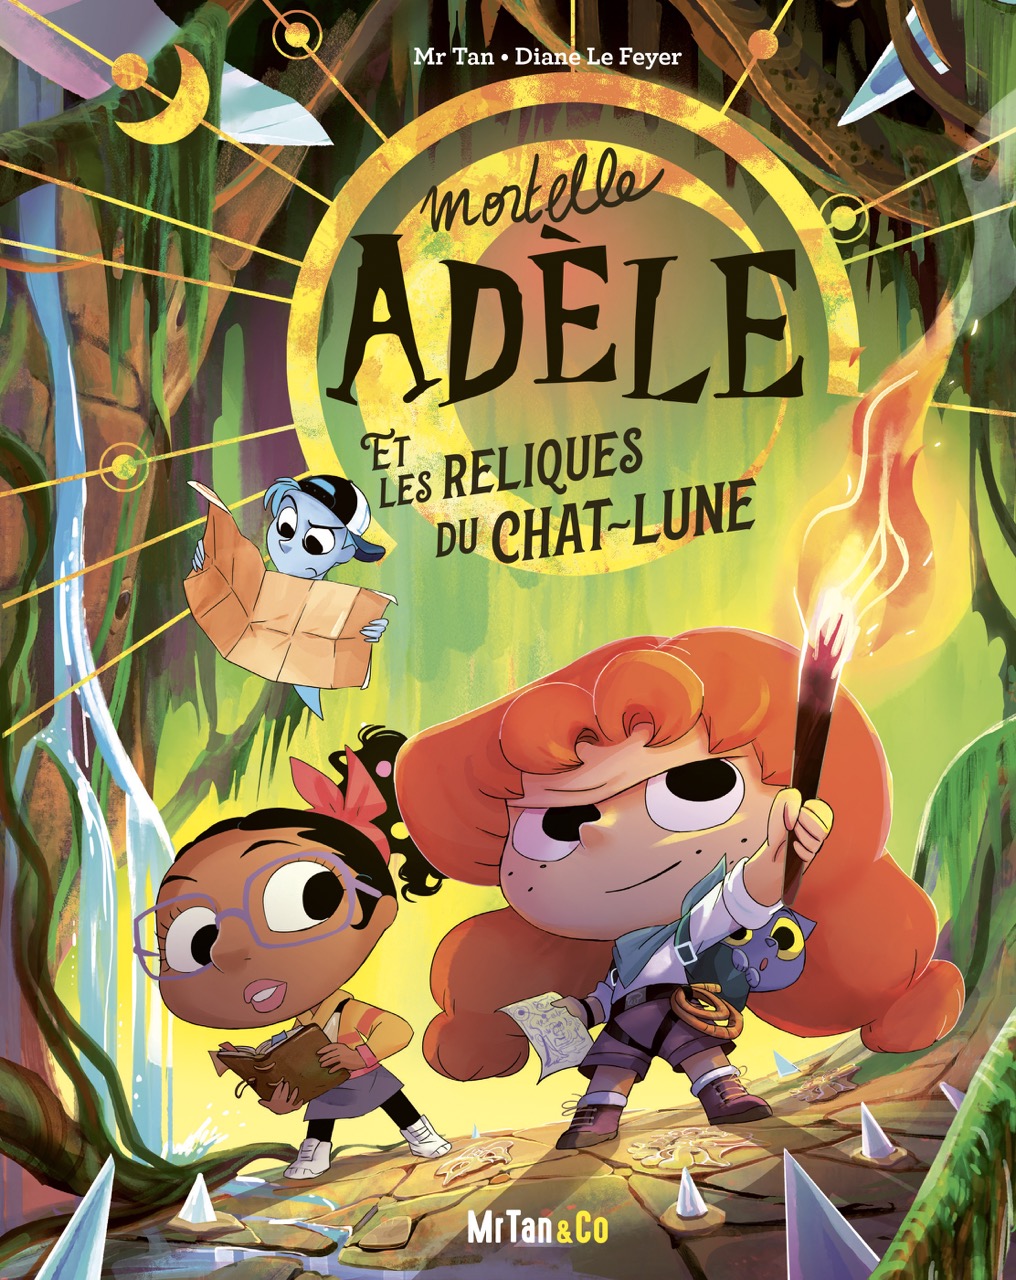 Mortelle Adèle (Mortal Adèle) by Mr Tan (Antoine Dole) and Diane